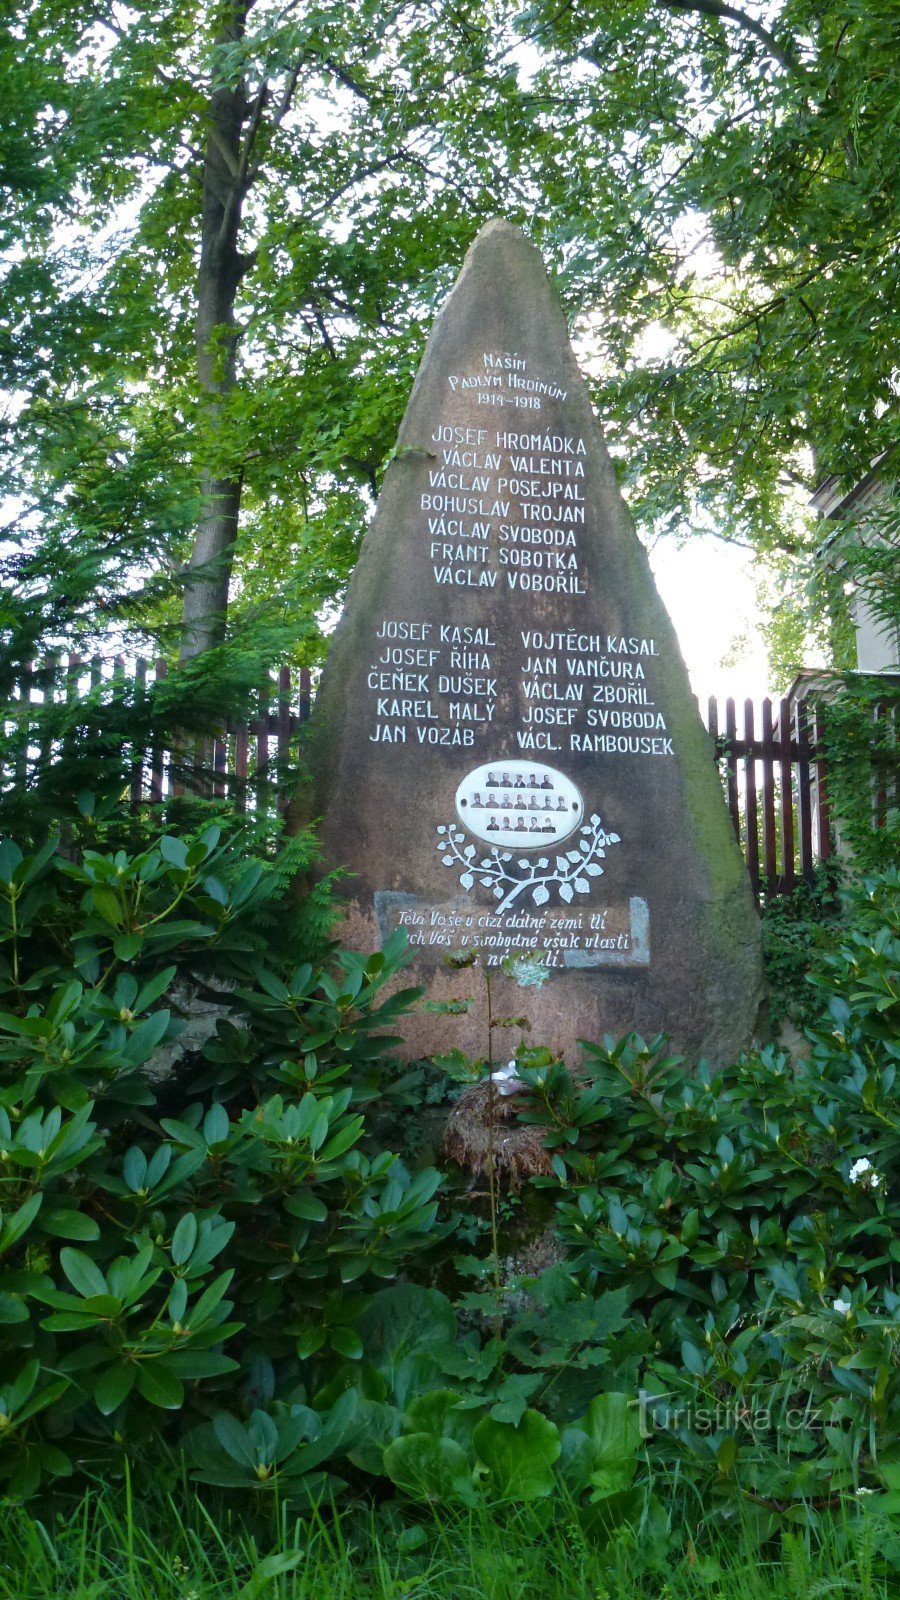 17 noms sont gravés dans le monument